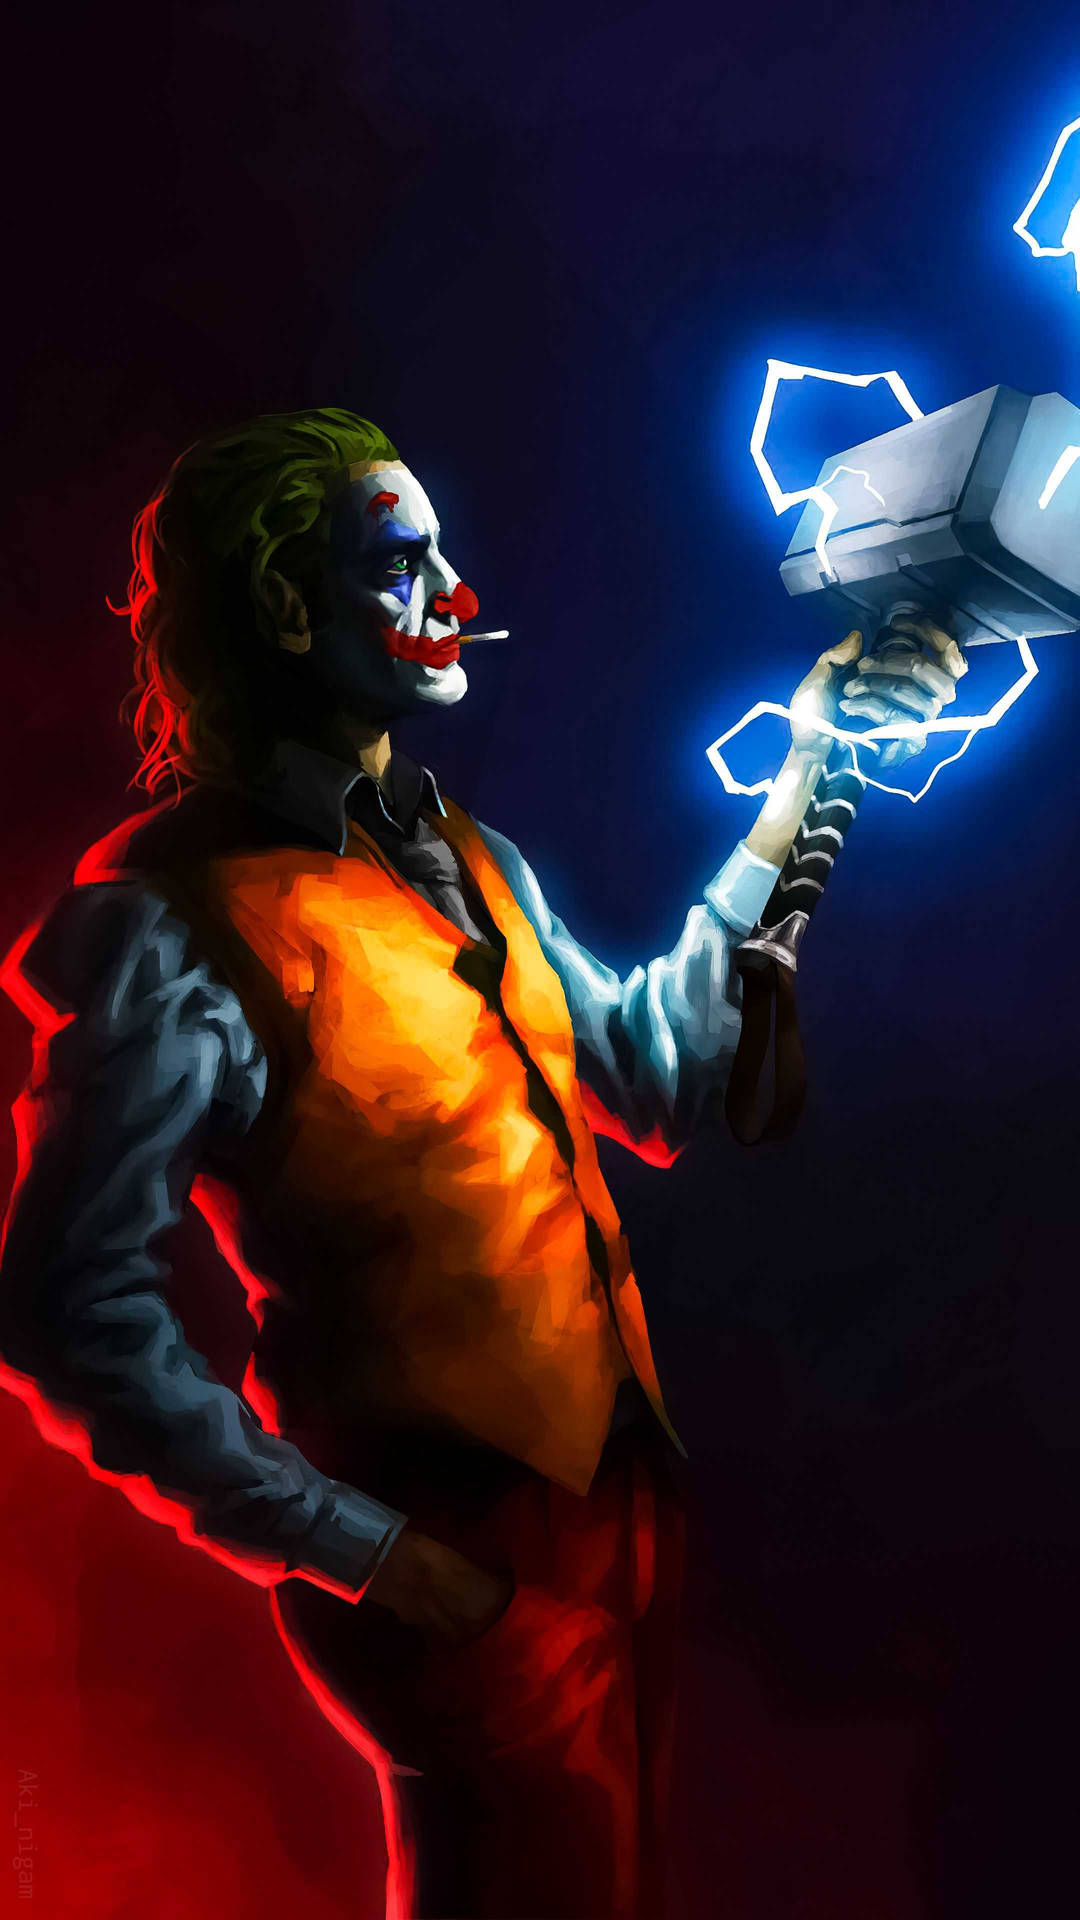 Joker Clown With Hammer Background